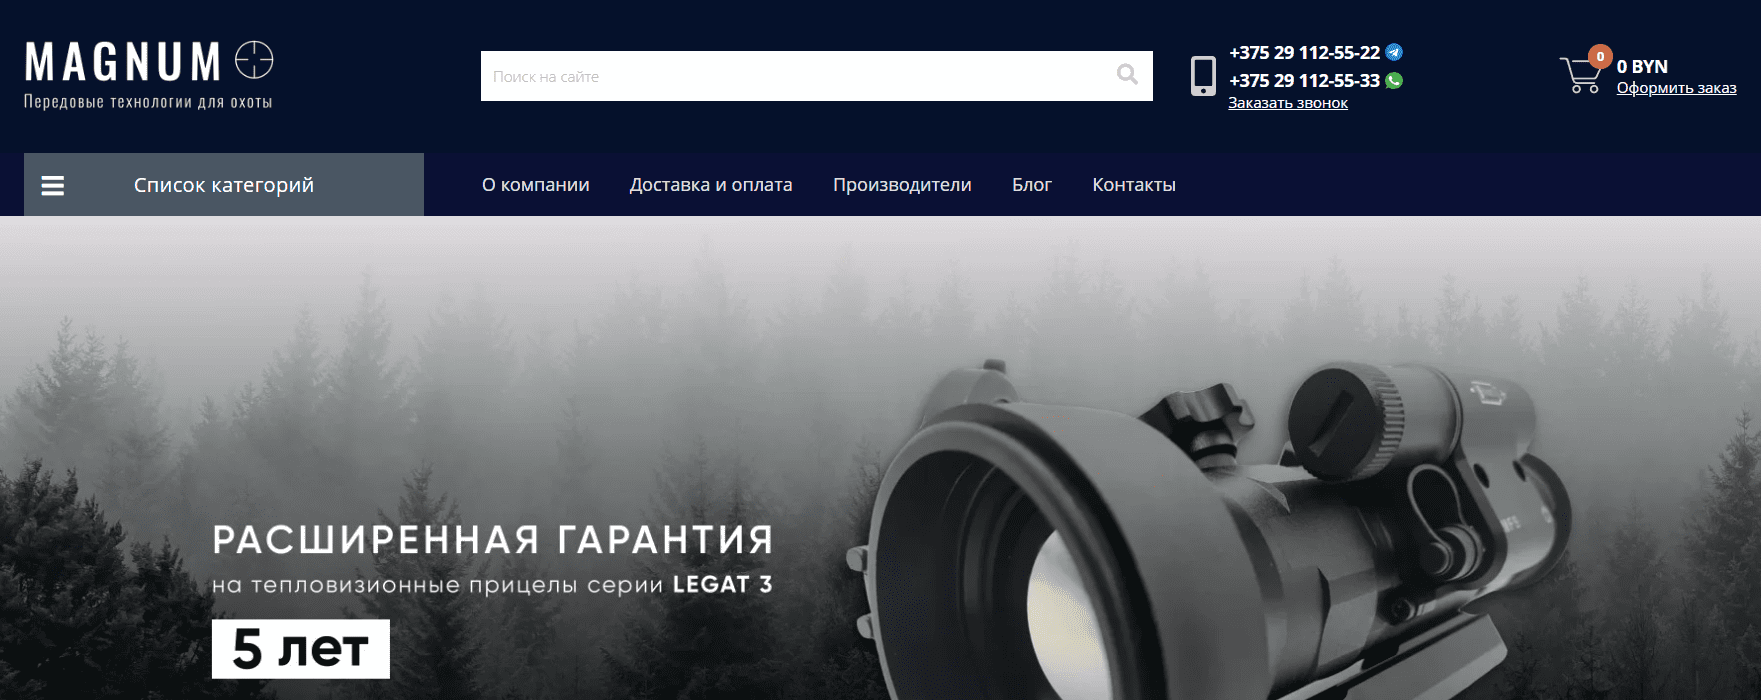 Минский интернет-магазин (magnum.by) - официальный сайт